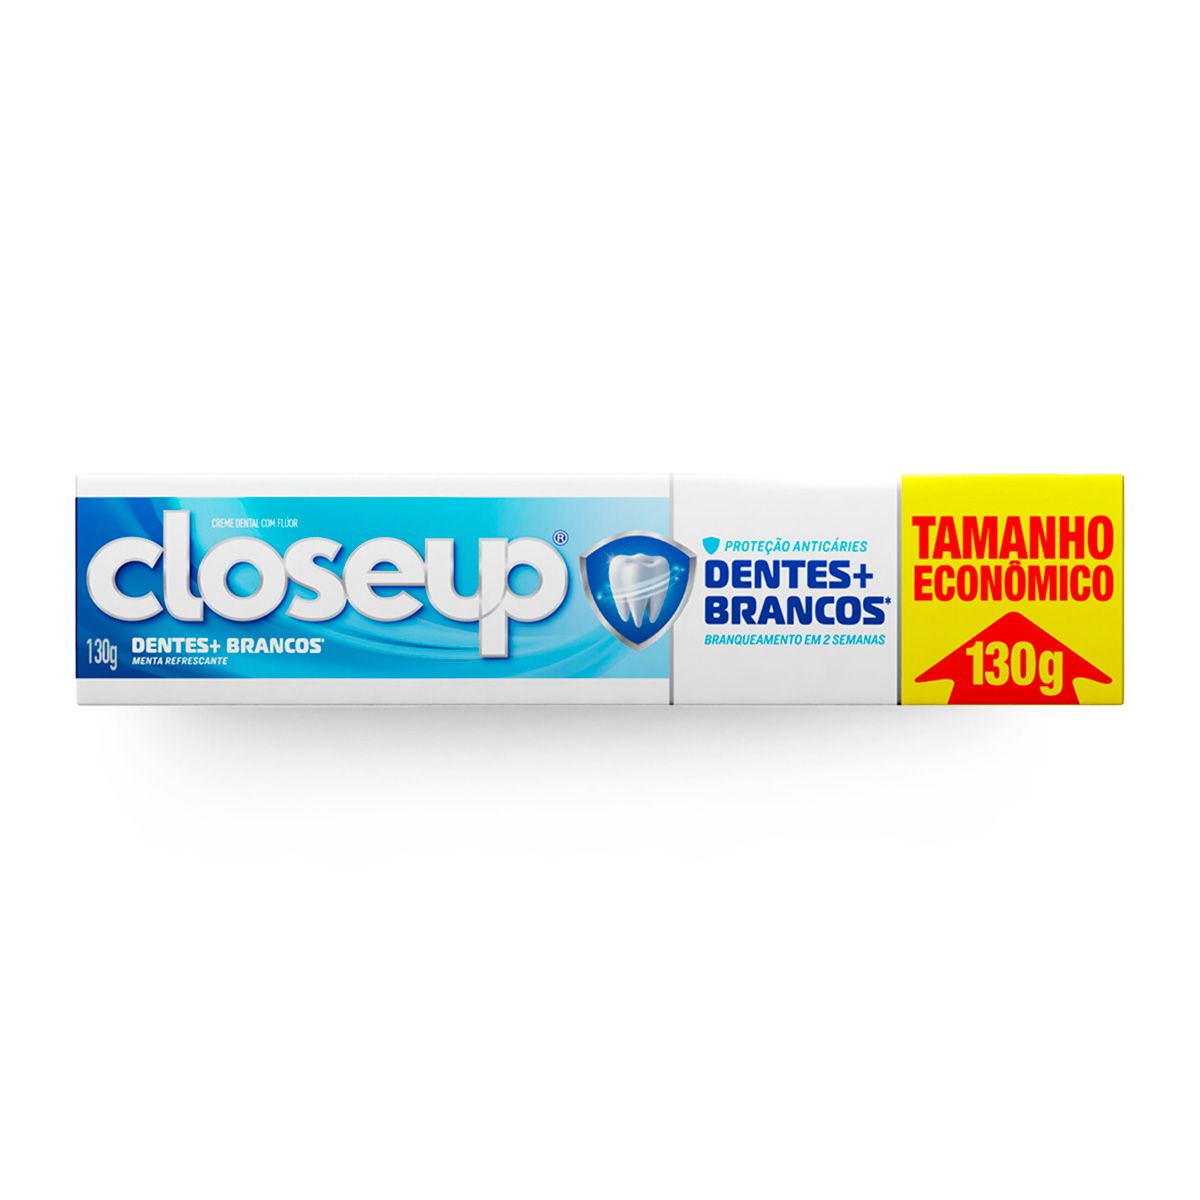 Creme Dental Close Up Dentes + Brancos 130g Tamanho Econômico image number 0